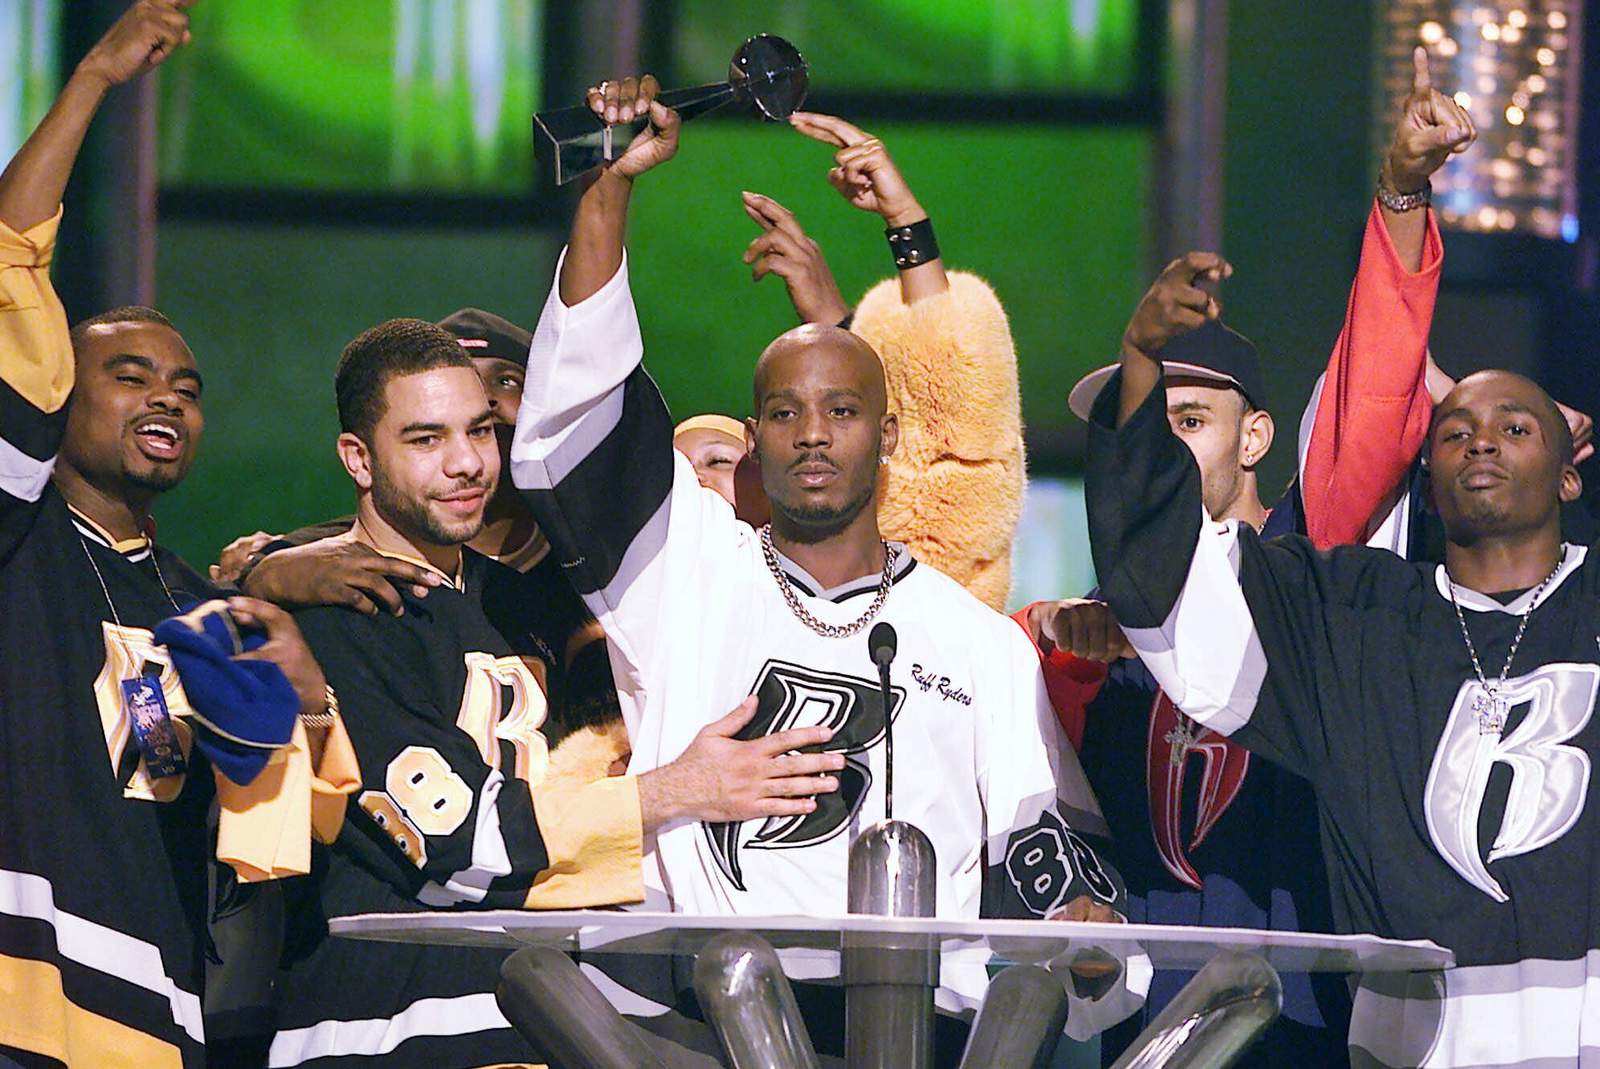 Nas, Eve, Snoop, Aaliyah's mom react to death of rapper DMX